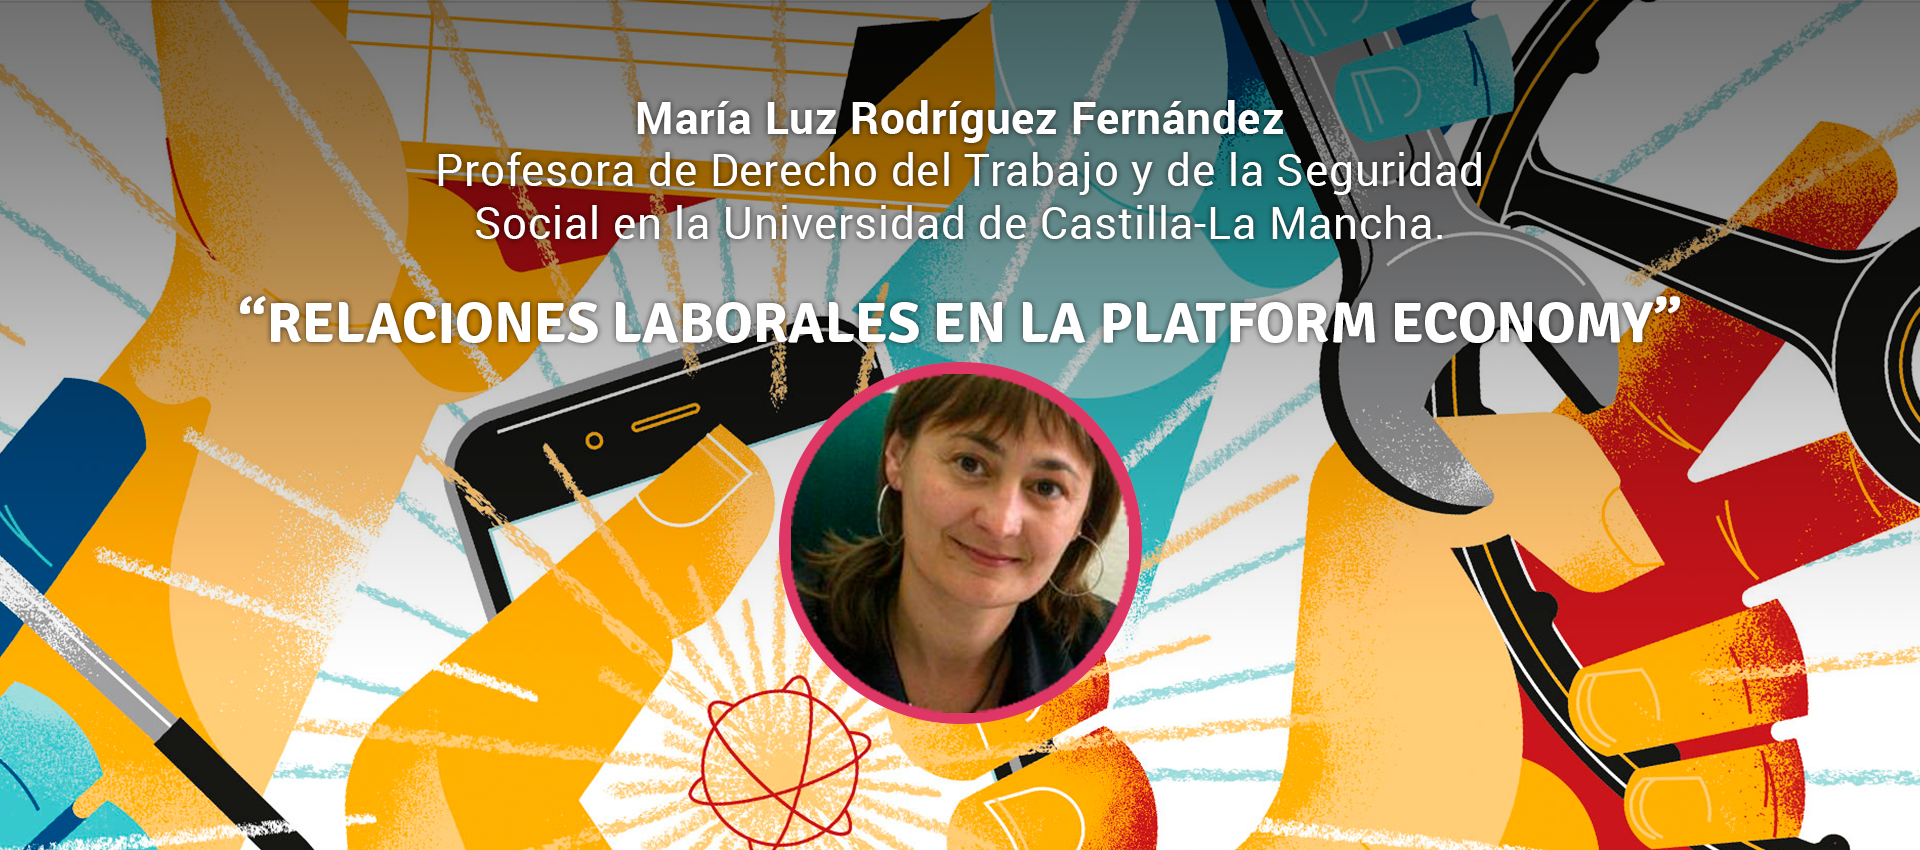 Maria Luz Rodriguez Fernandez - RELACIONES LABORALES EN LA PLATFORM ECONOMY